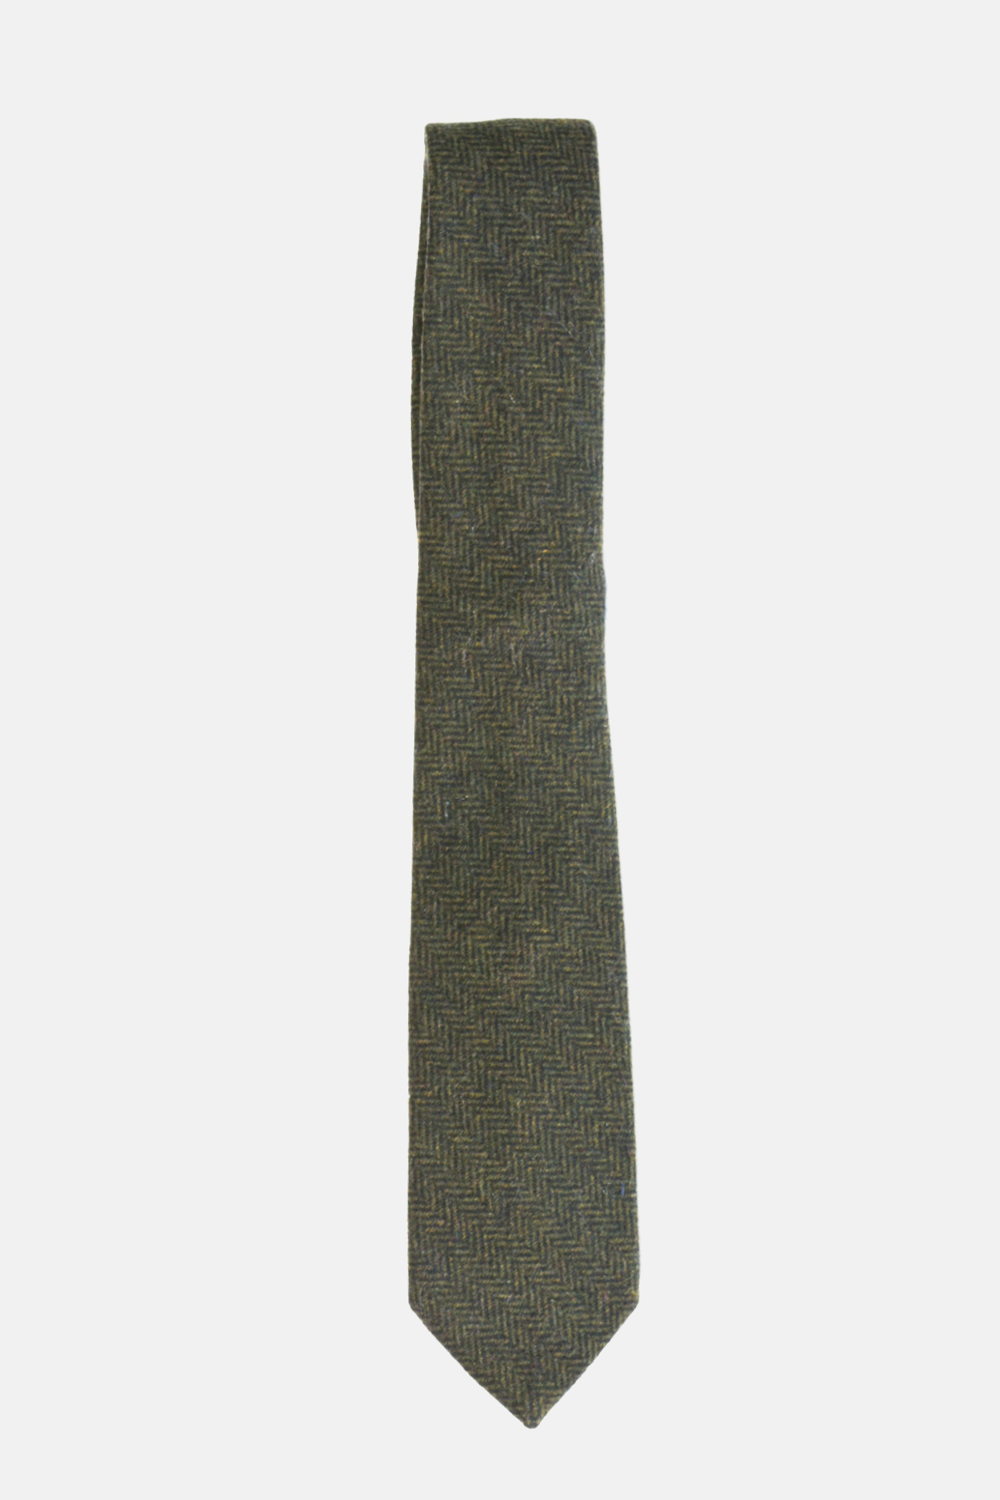 Dark Green Herringbone Wool Tie